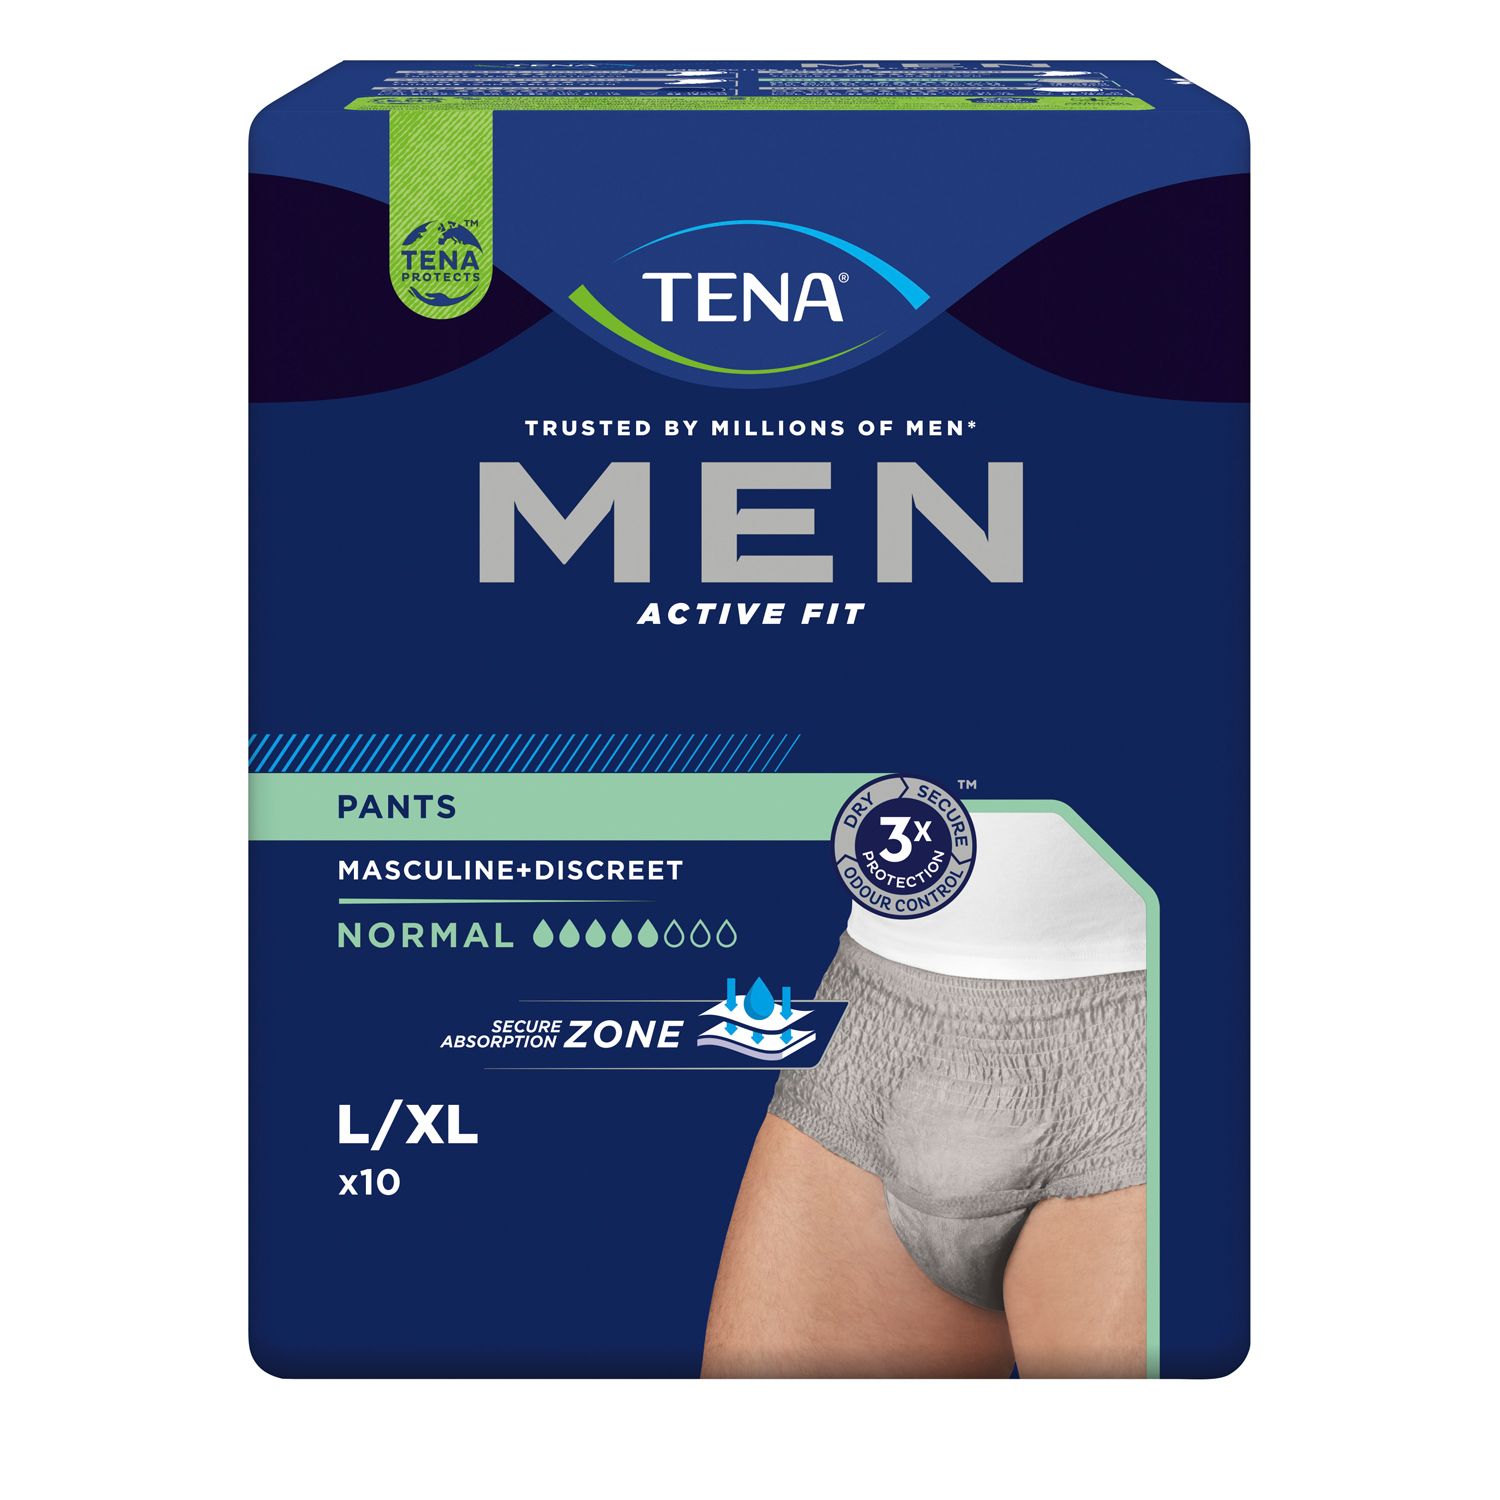 TENA MEN ACTIVE FIT PANTS L/XL